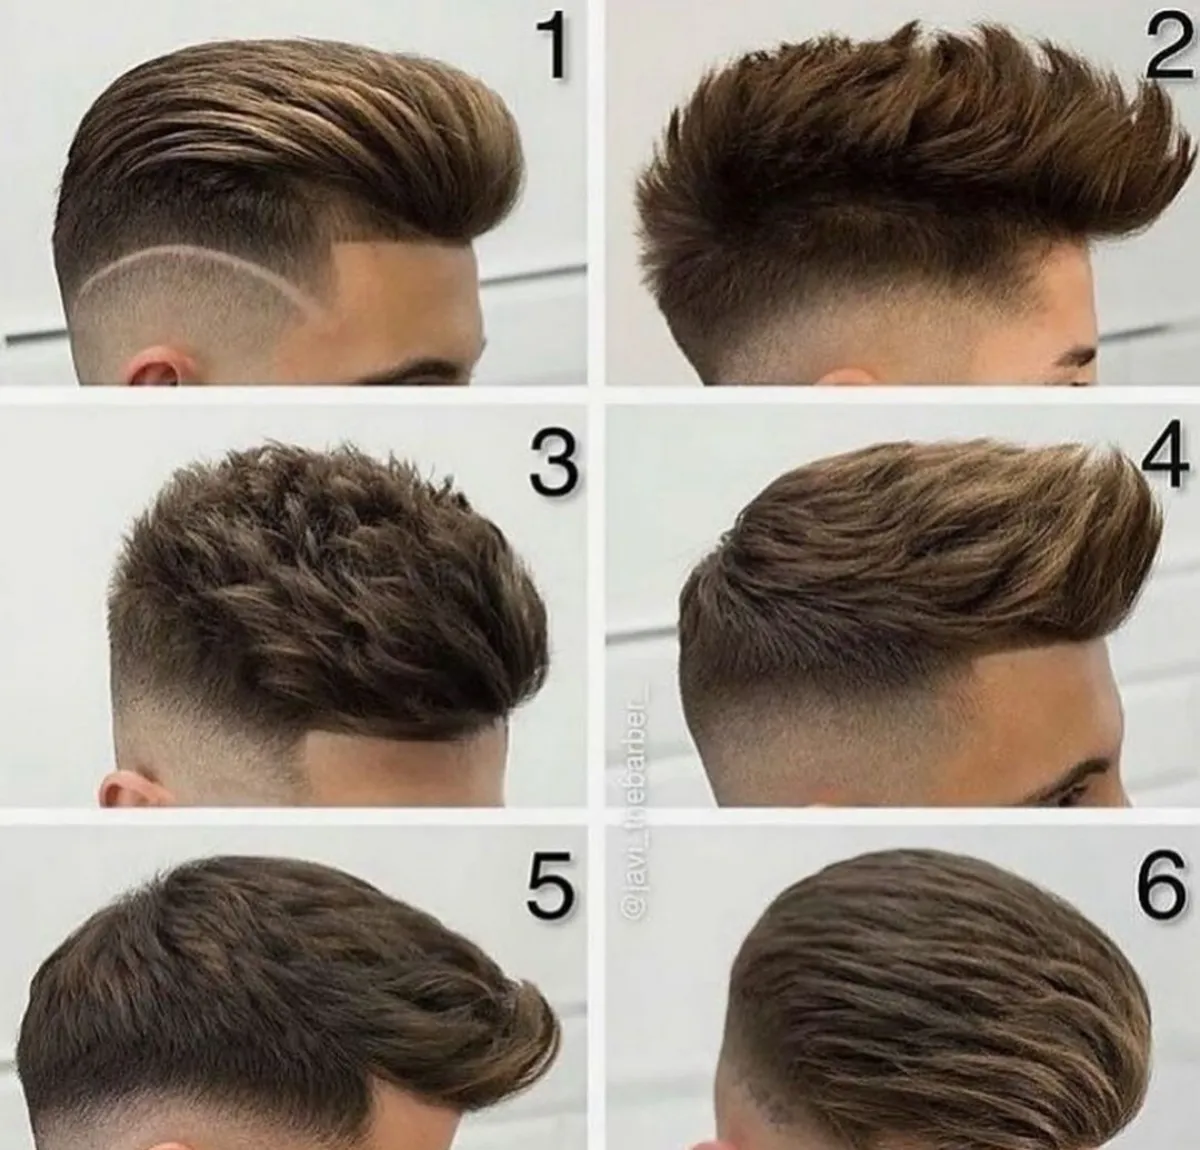 sechs fade cut haarchnitte moderne hairstyles männer